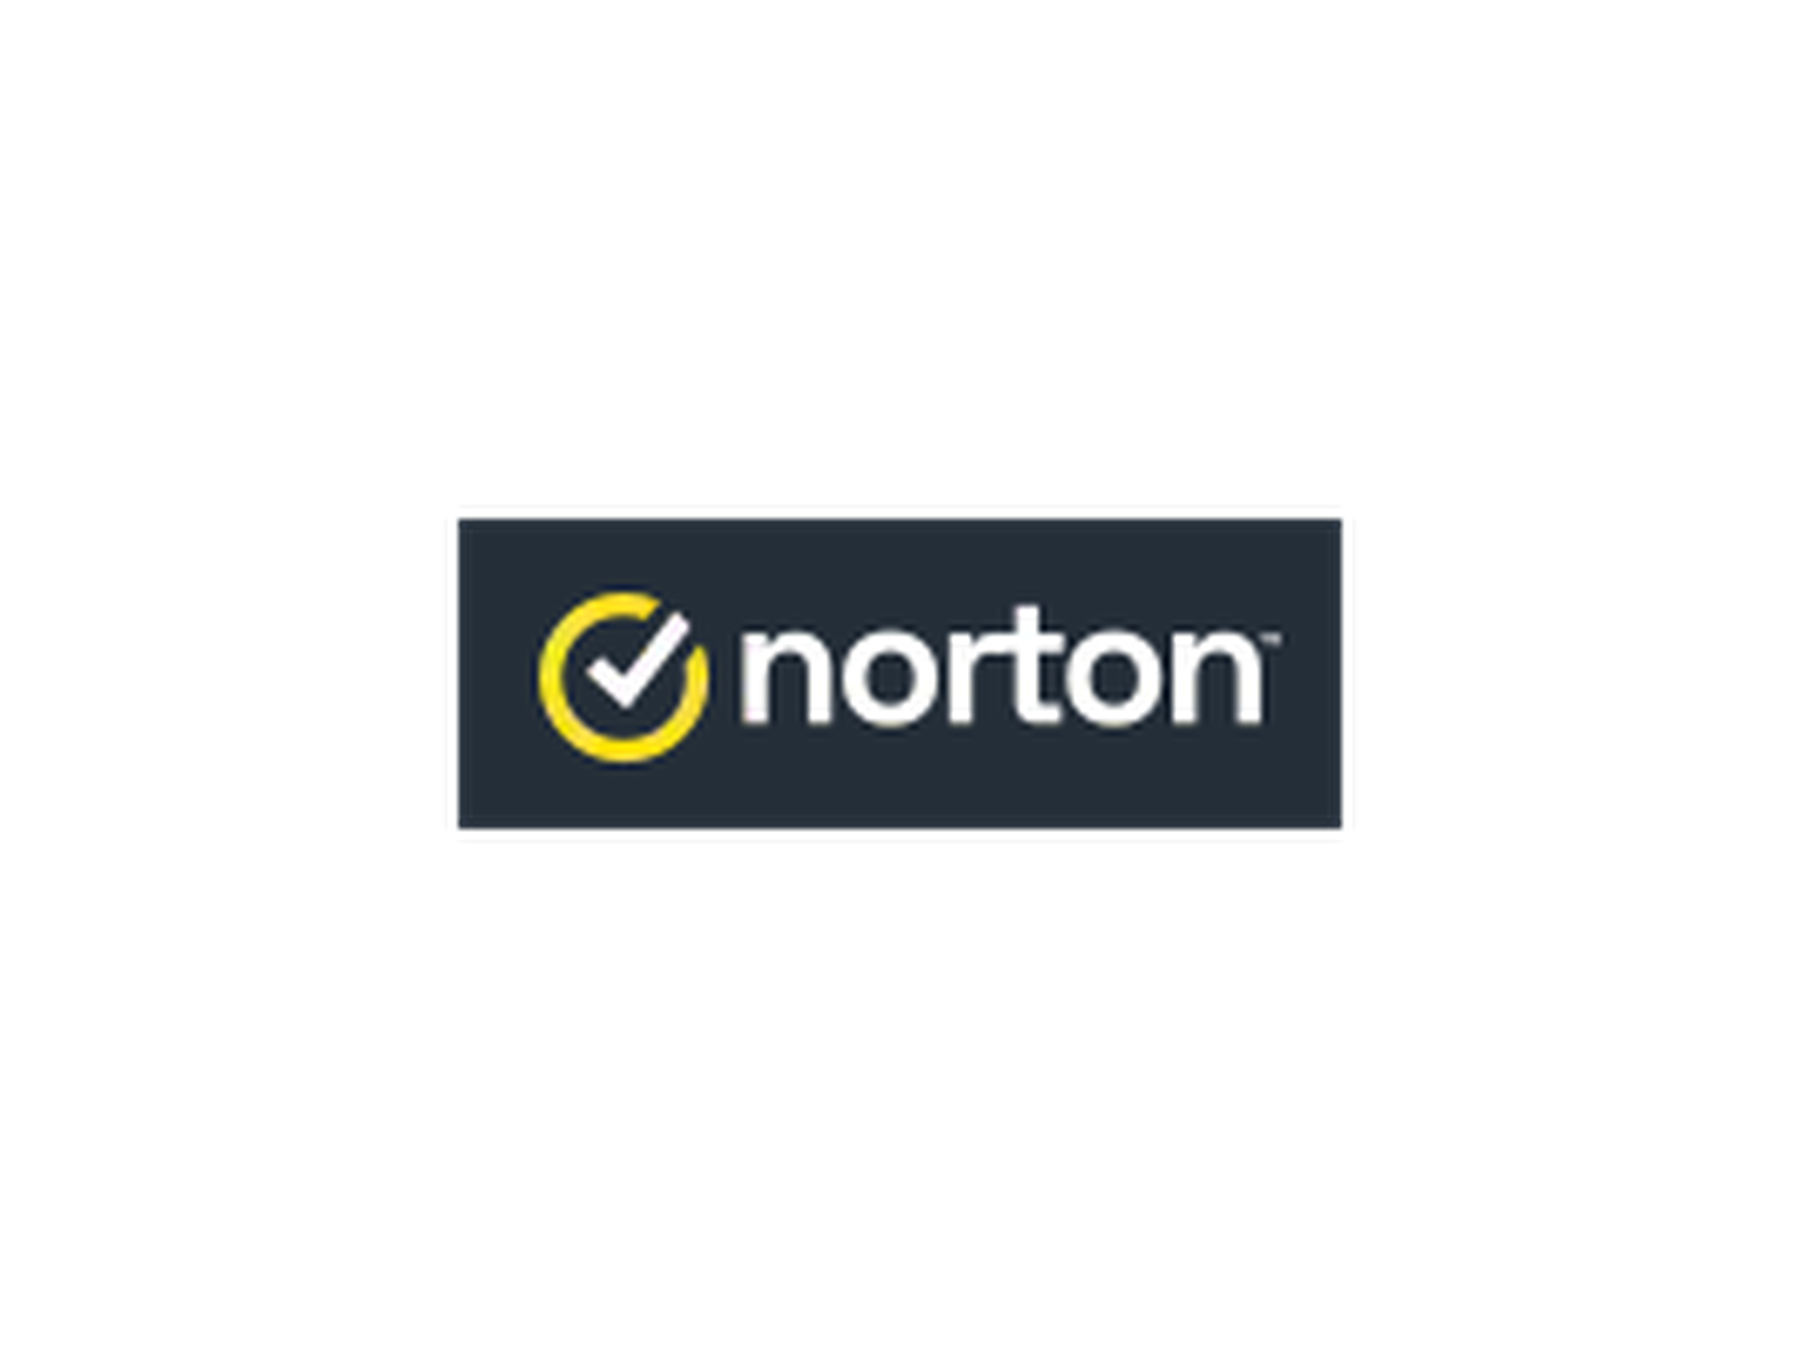 Norton Gutscheine